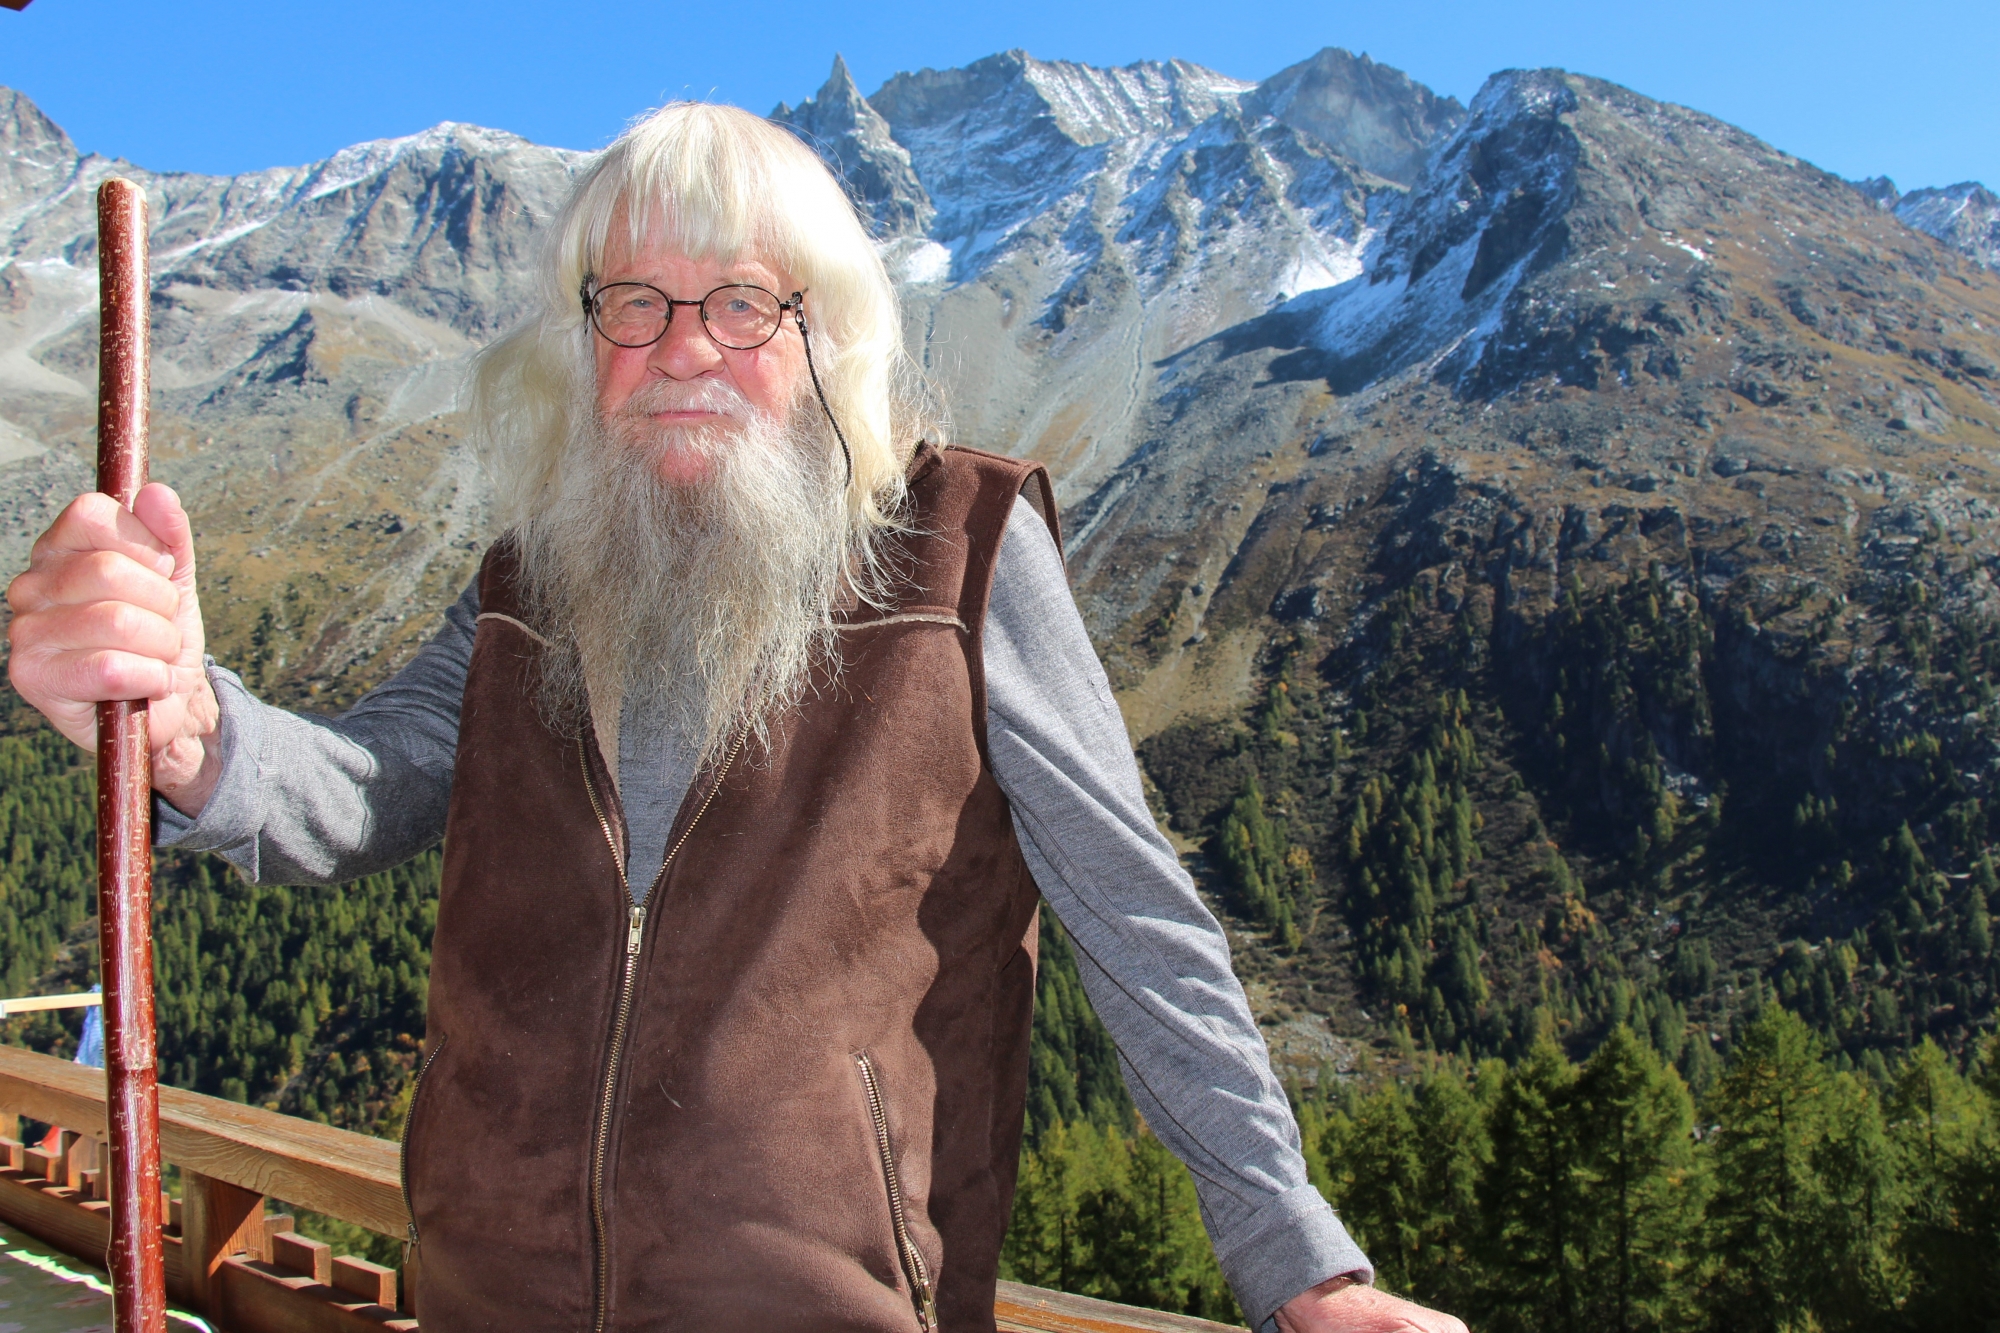 Le célèbre guide Werner Munter nous a reçus à Arolla pour nous parler du «plus grand challenge» de sa vie: les avalanches et leur compréhension.